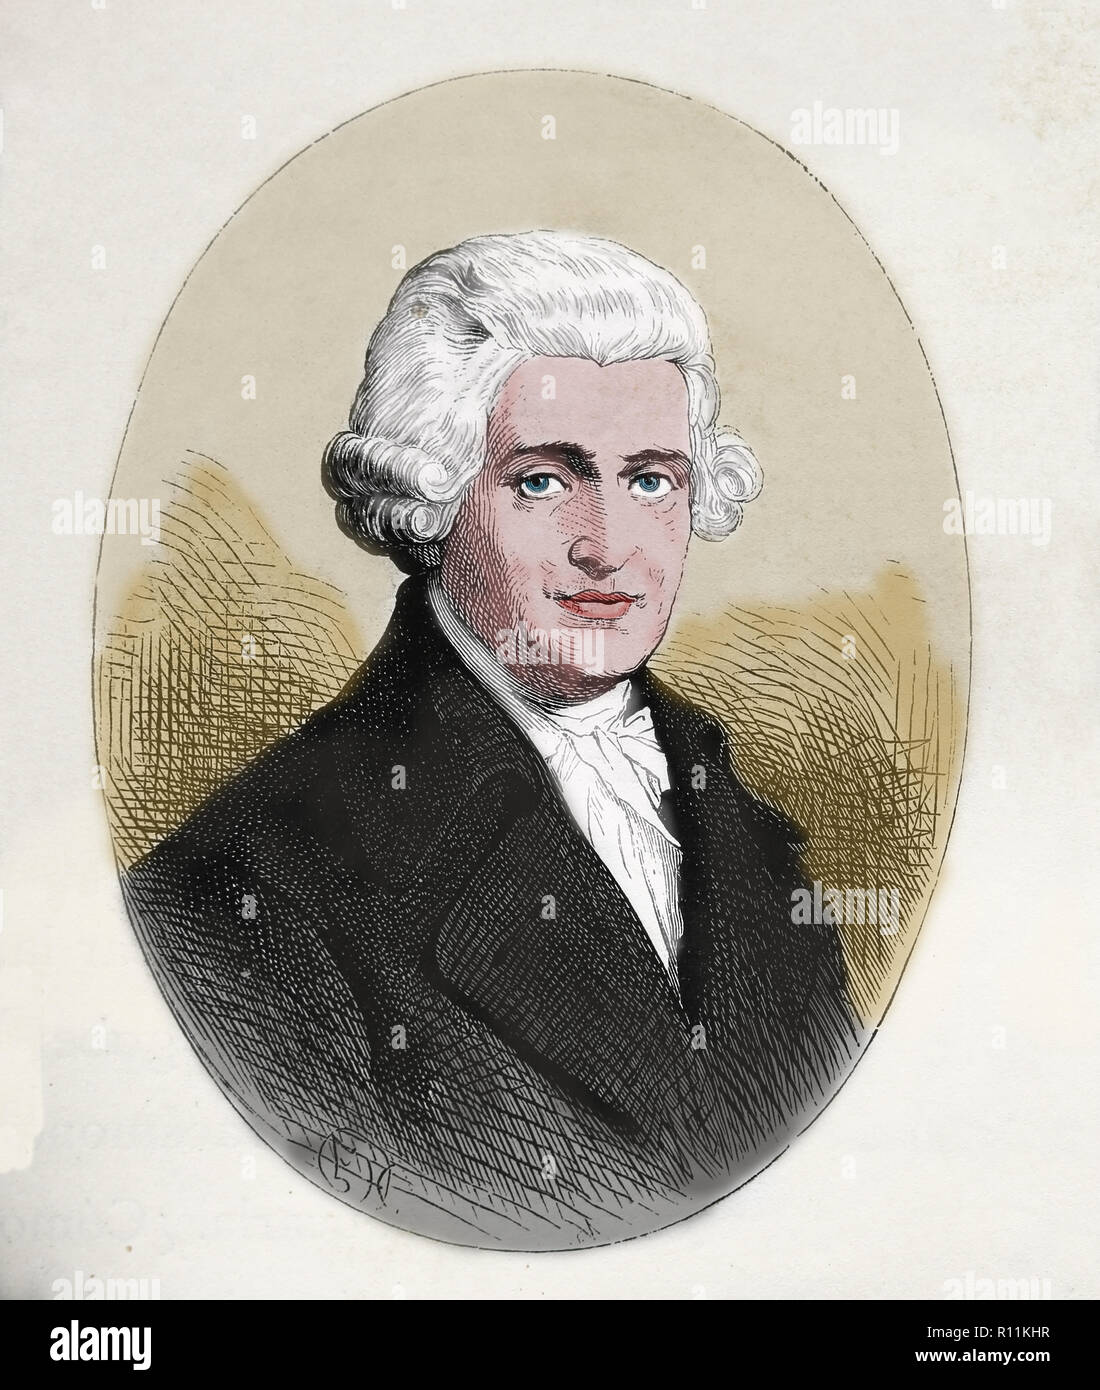 Joseph Haydn (1732-1809). Il compositore austriaco del periodo classico. Incisione di germanio, 1882. Foto Stock